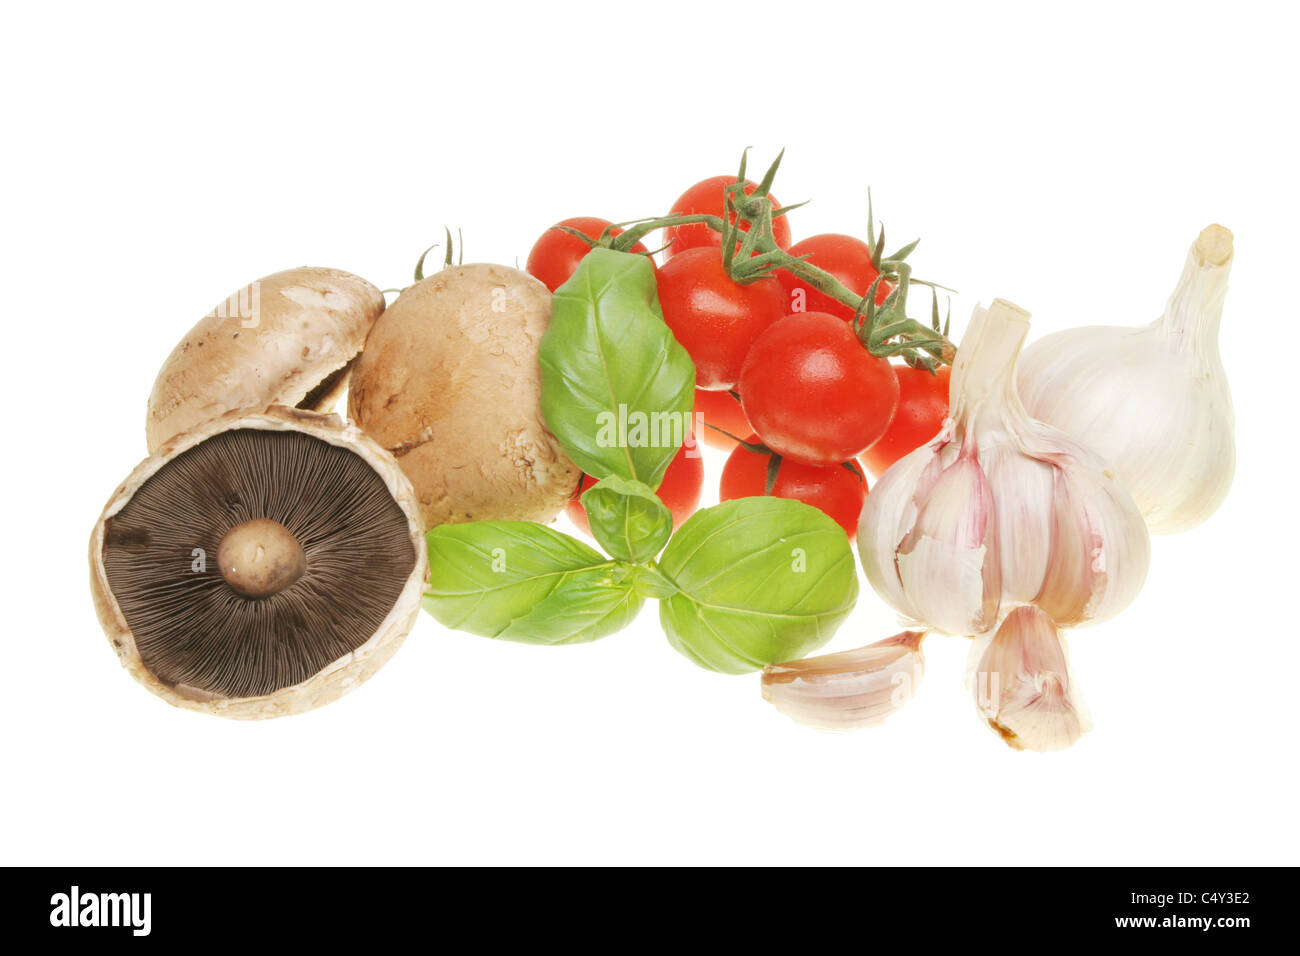 Des ingrédients alimentaires de champignons,le basilic, tomates et ail isolated on white Banque D'Images